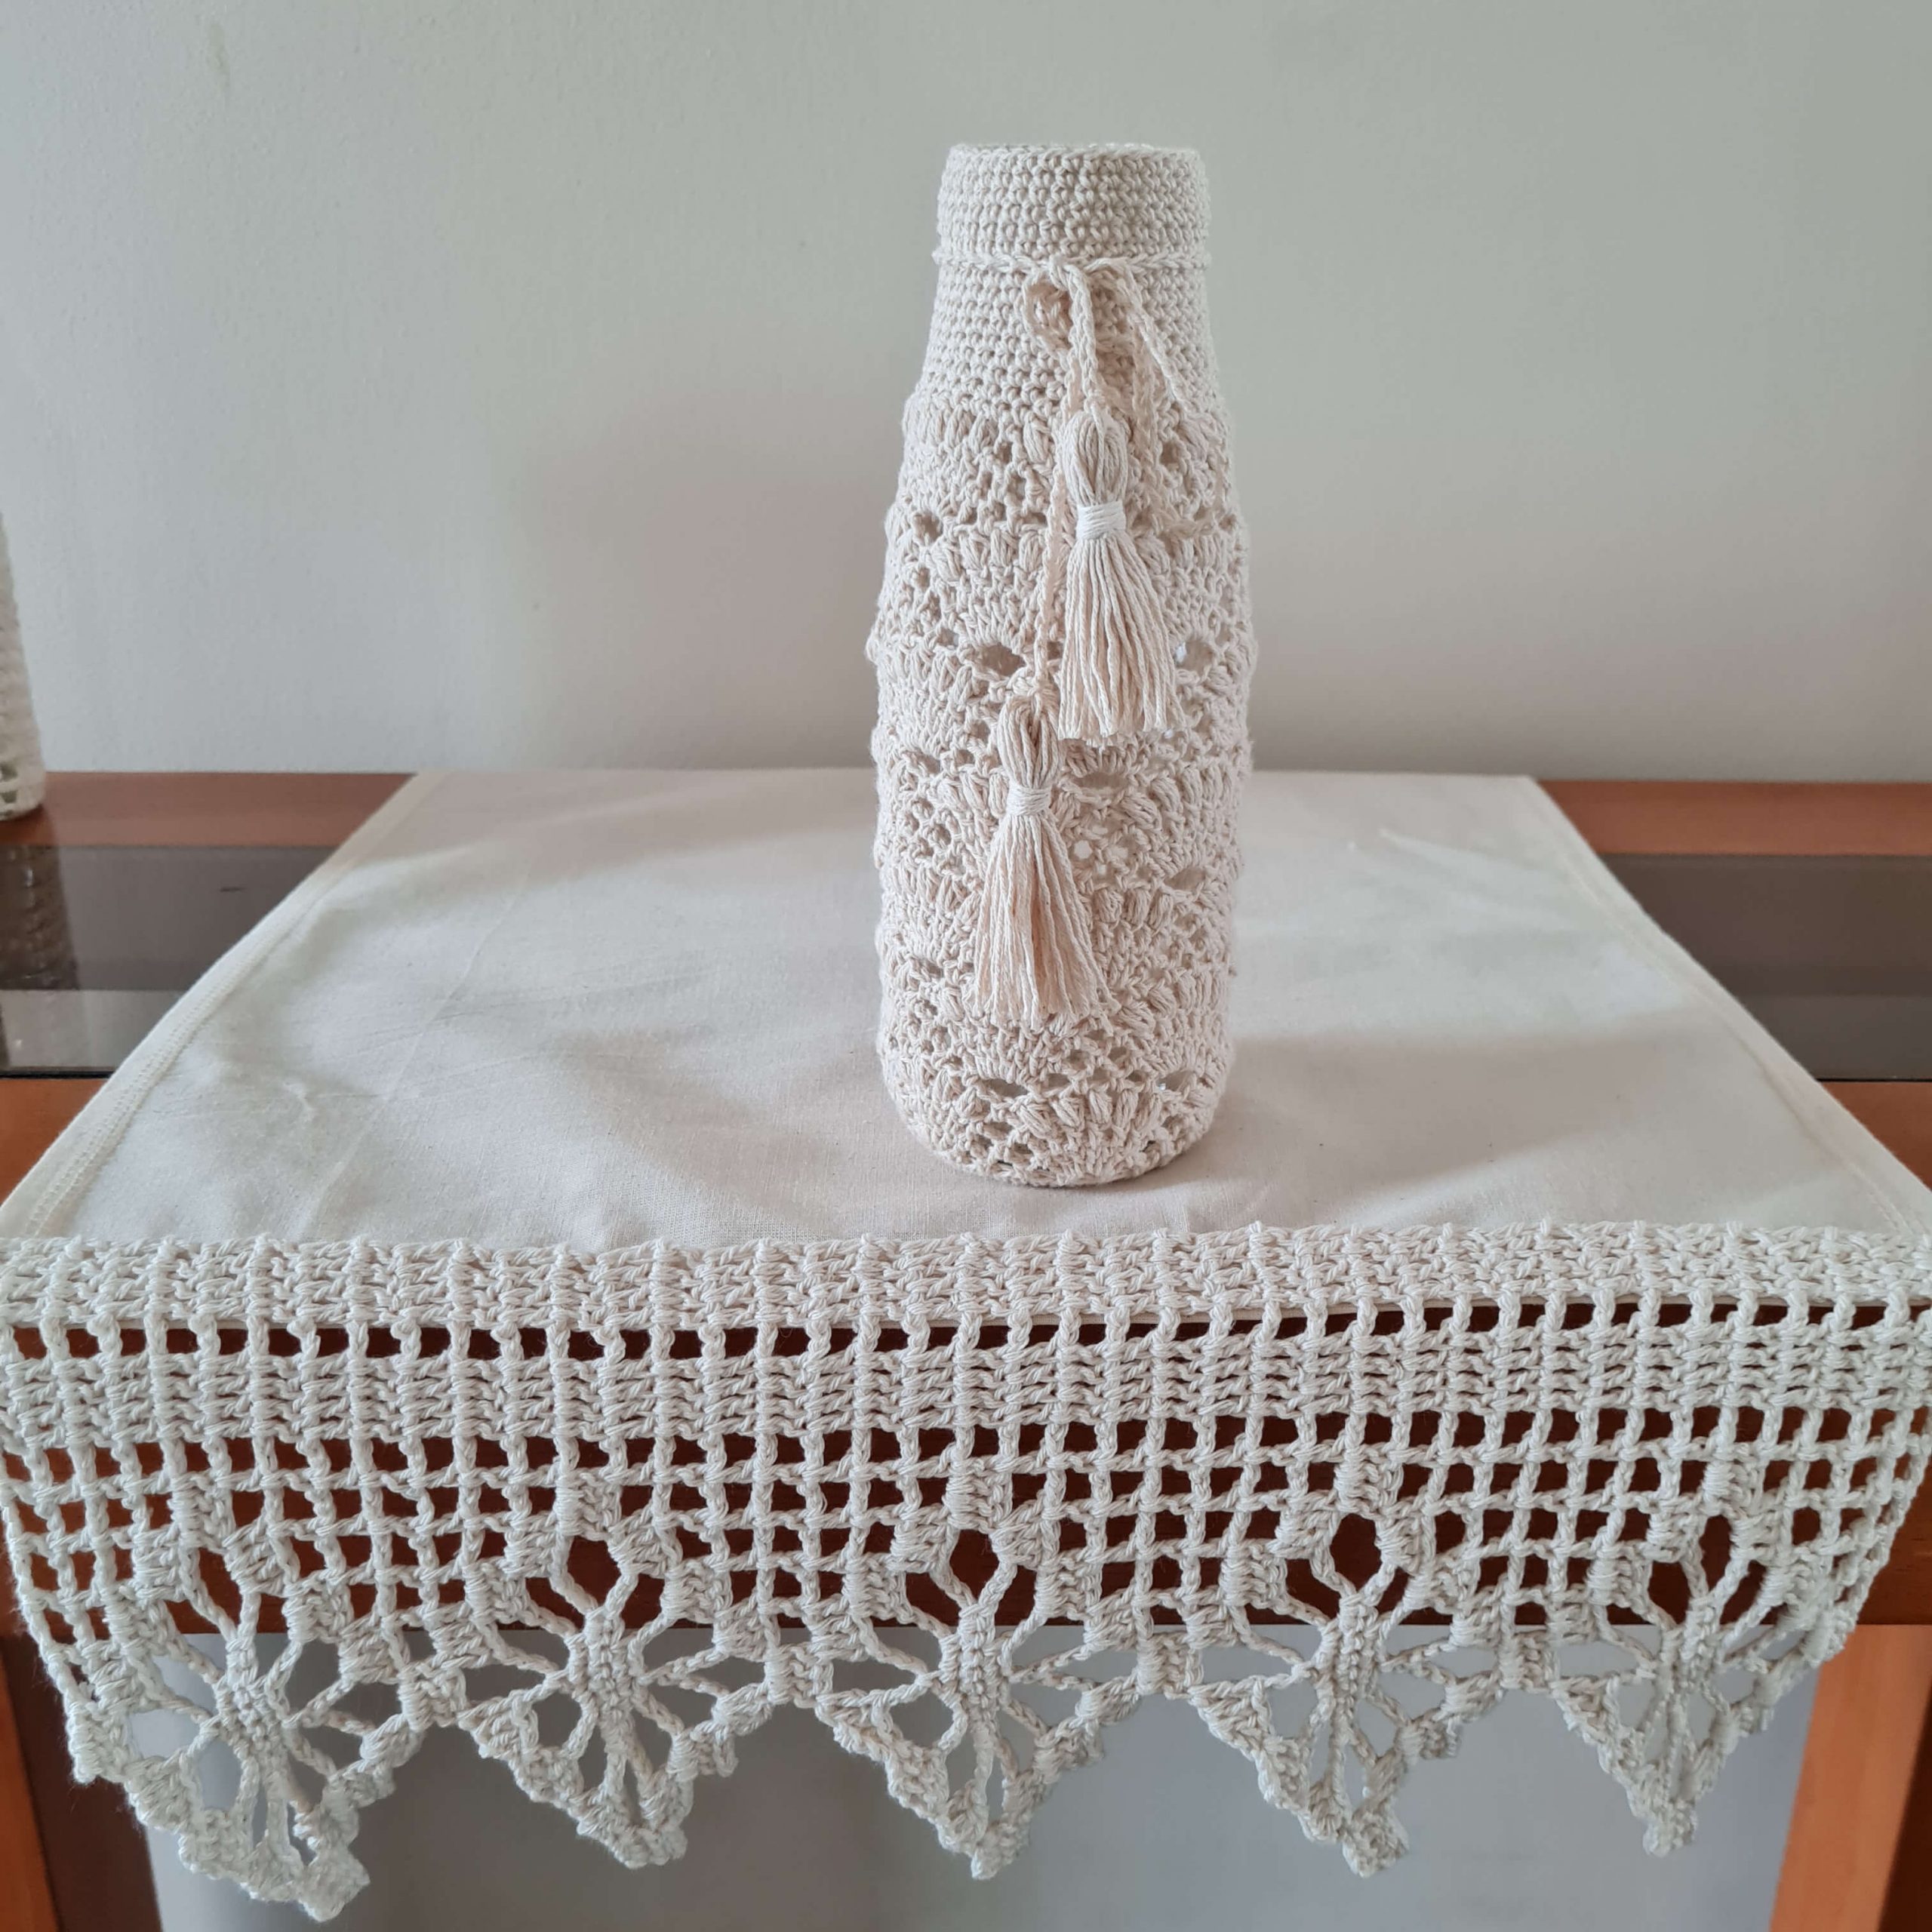 Botella decorada con tejido a crochet 3